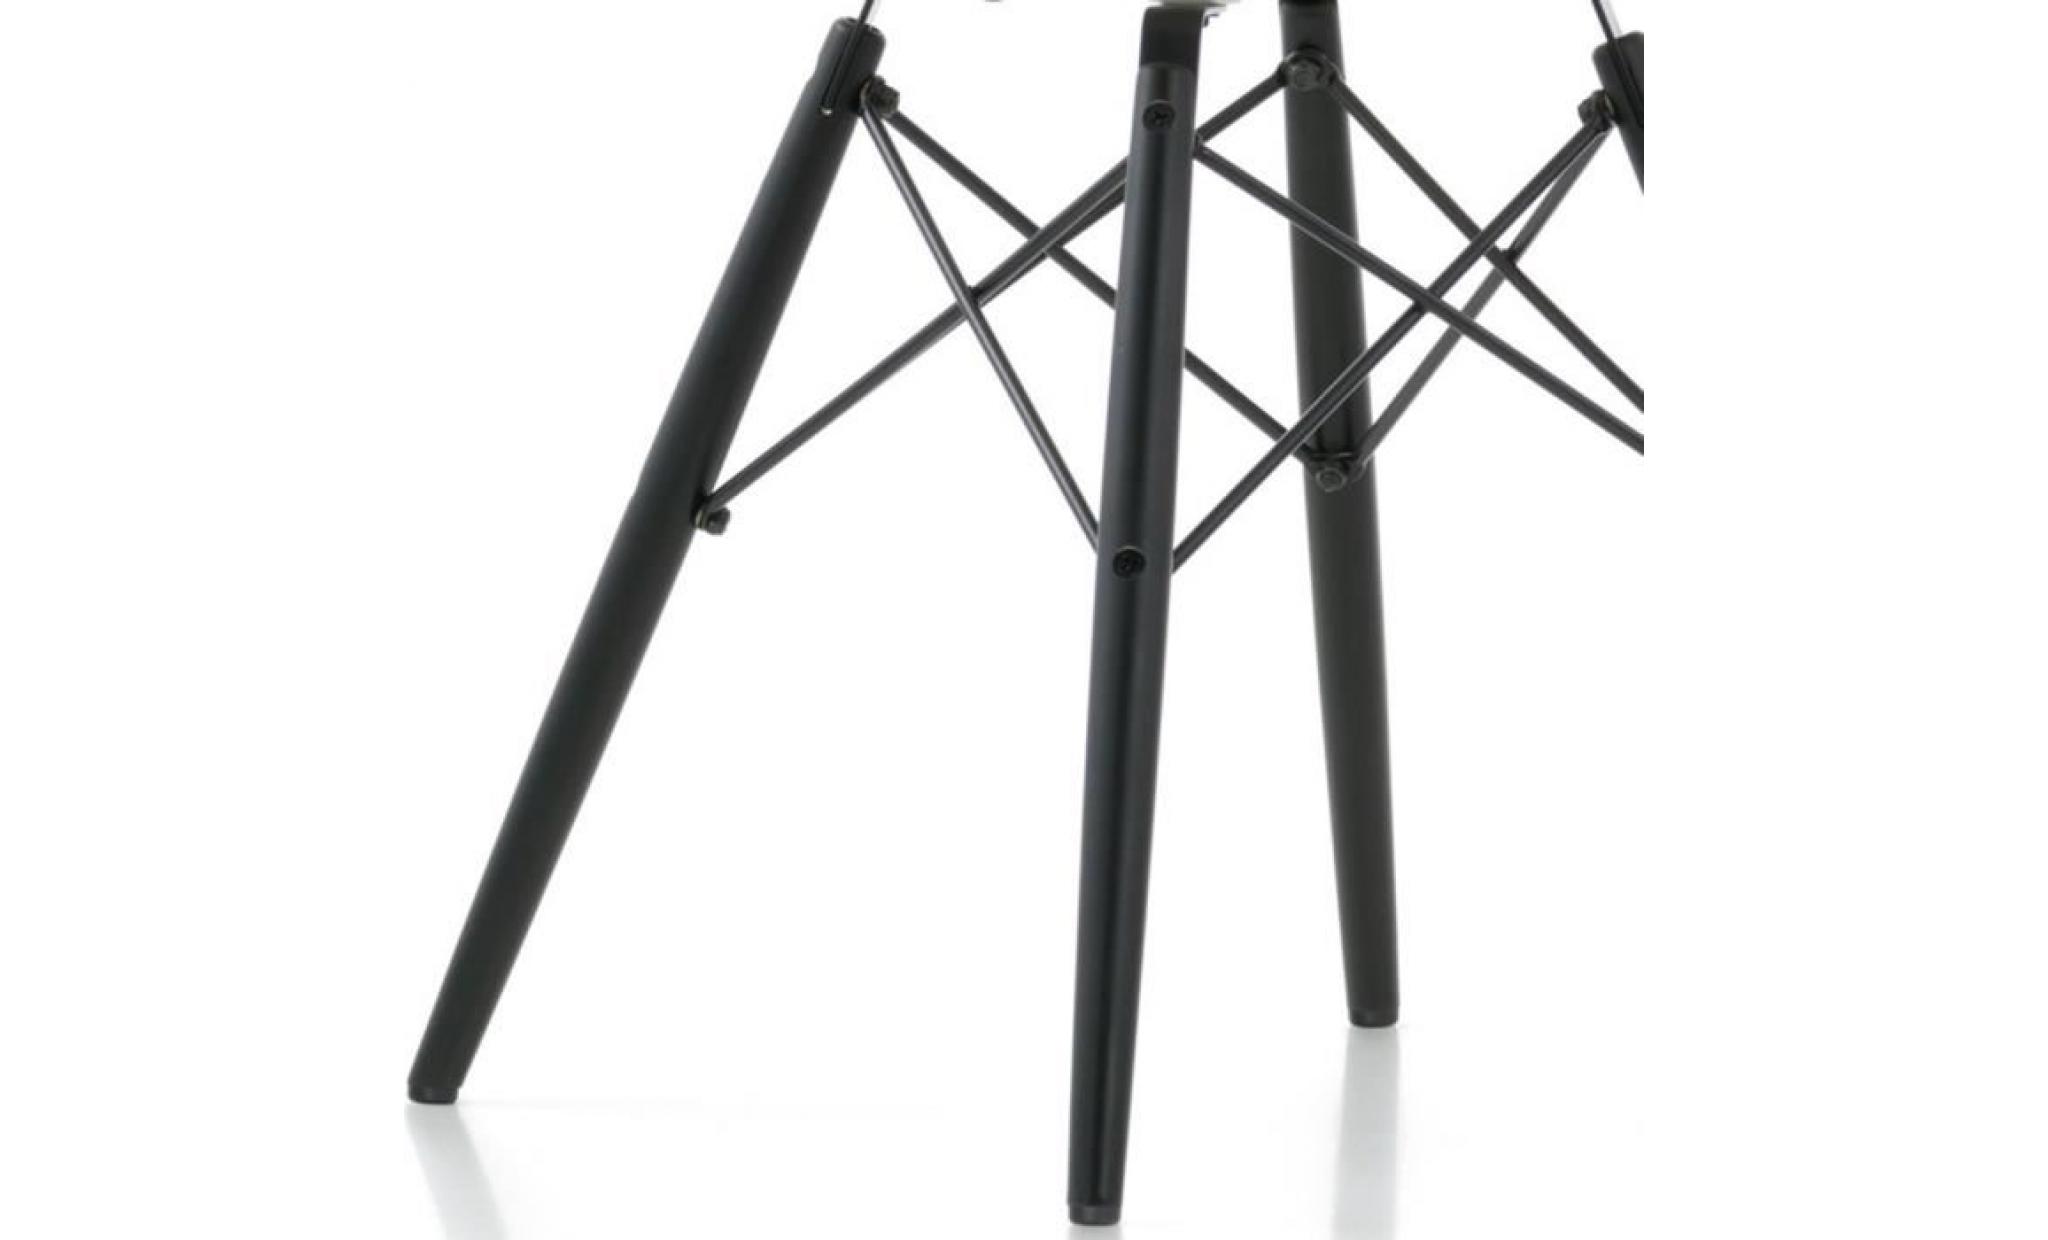 1 x fauteuil design  scandinave  pied de poule pieds: bois noir decopresto dp dawb pp 1 pas cher